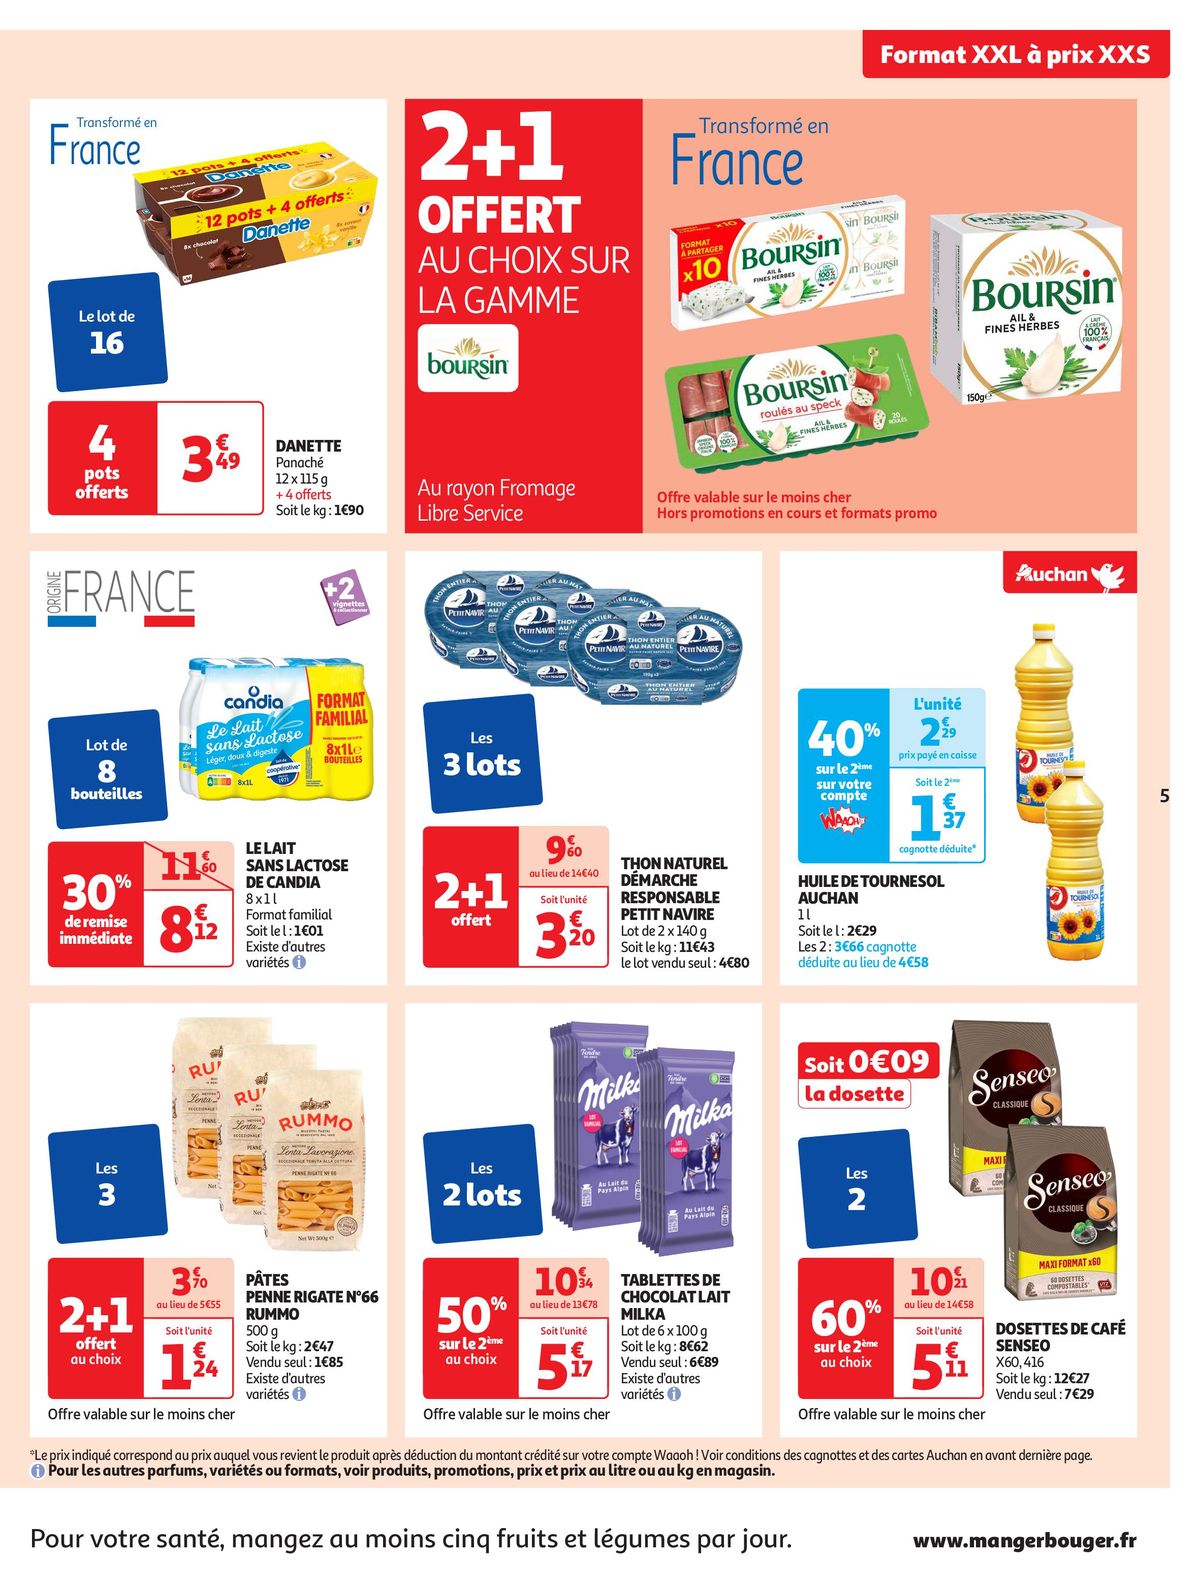 Catalogue Format XXL à prix XXS dans votre supermarché, page 00005